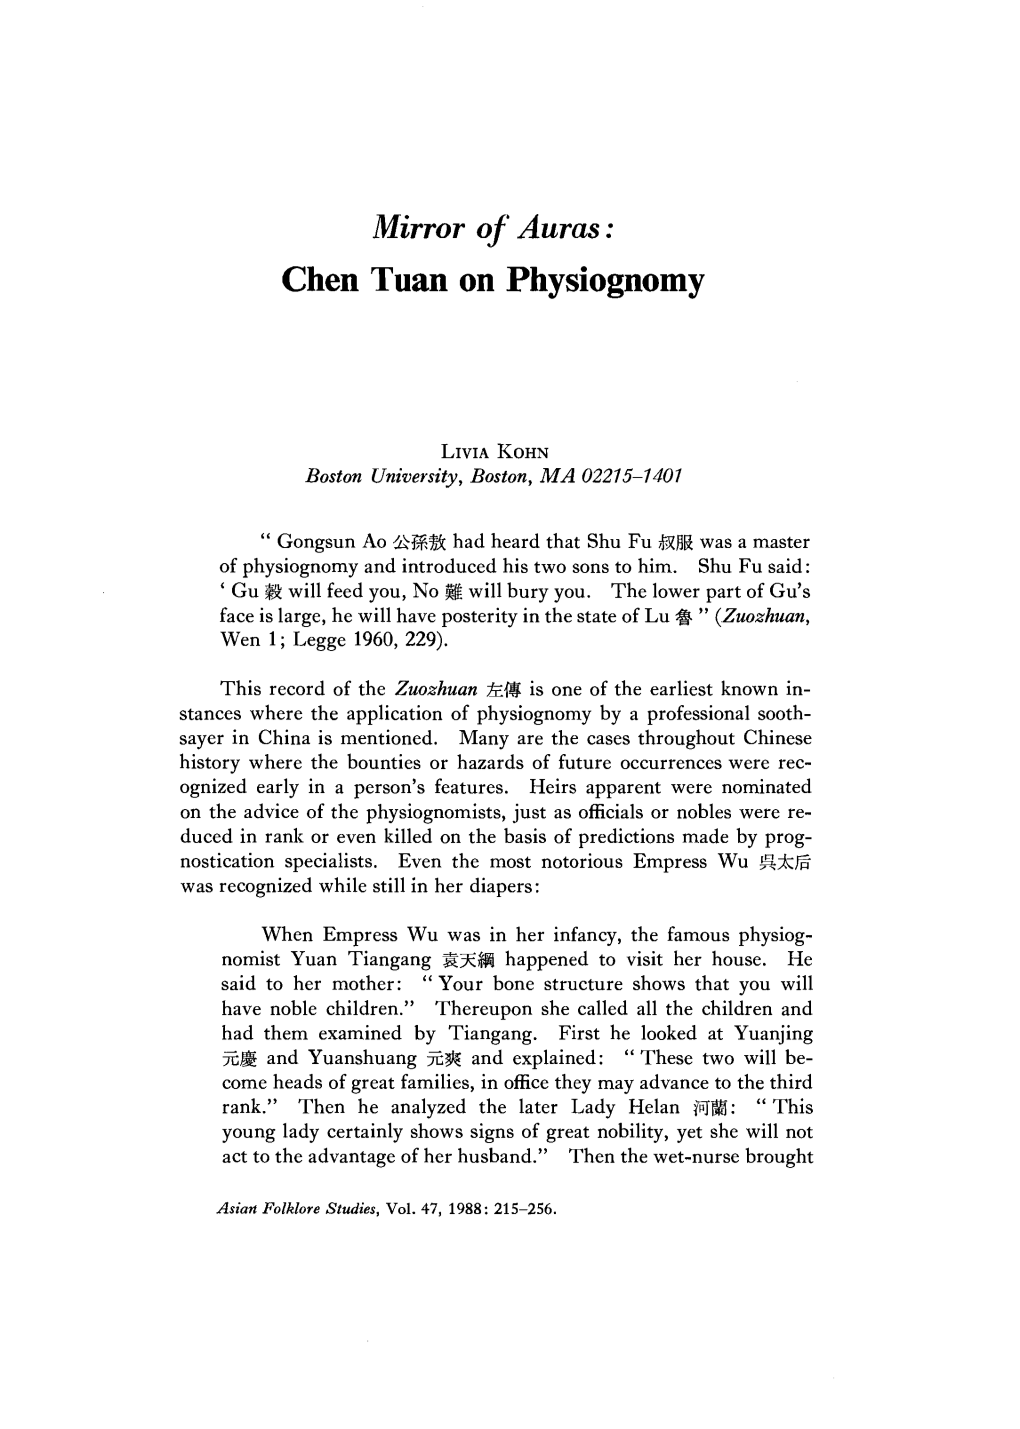 Mirror of Auras: Chen Tuan on Physiognomy